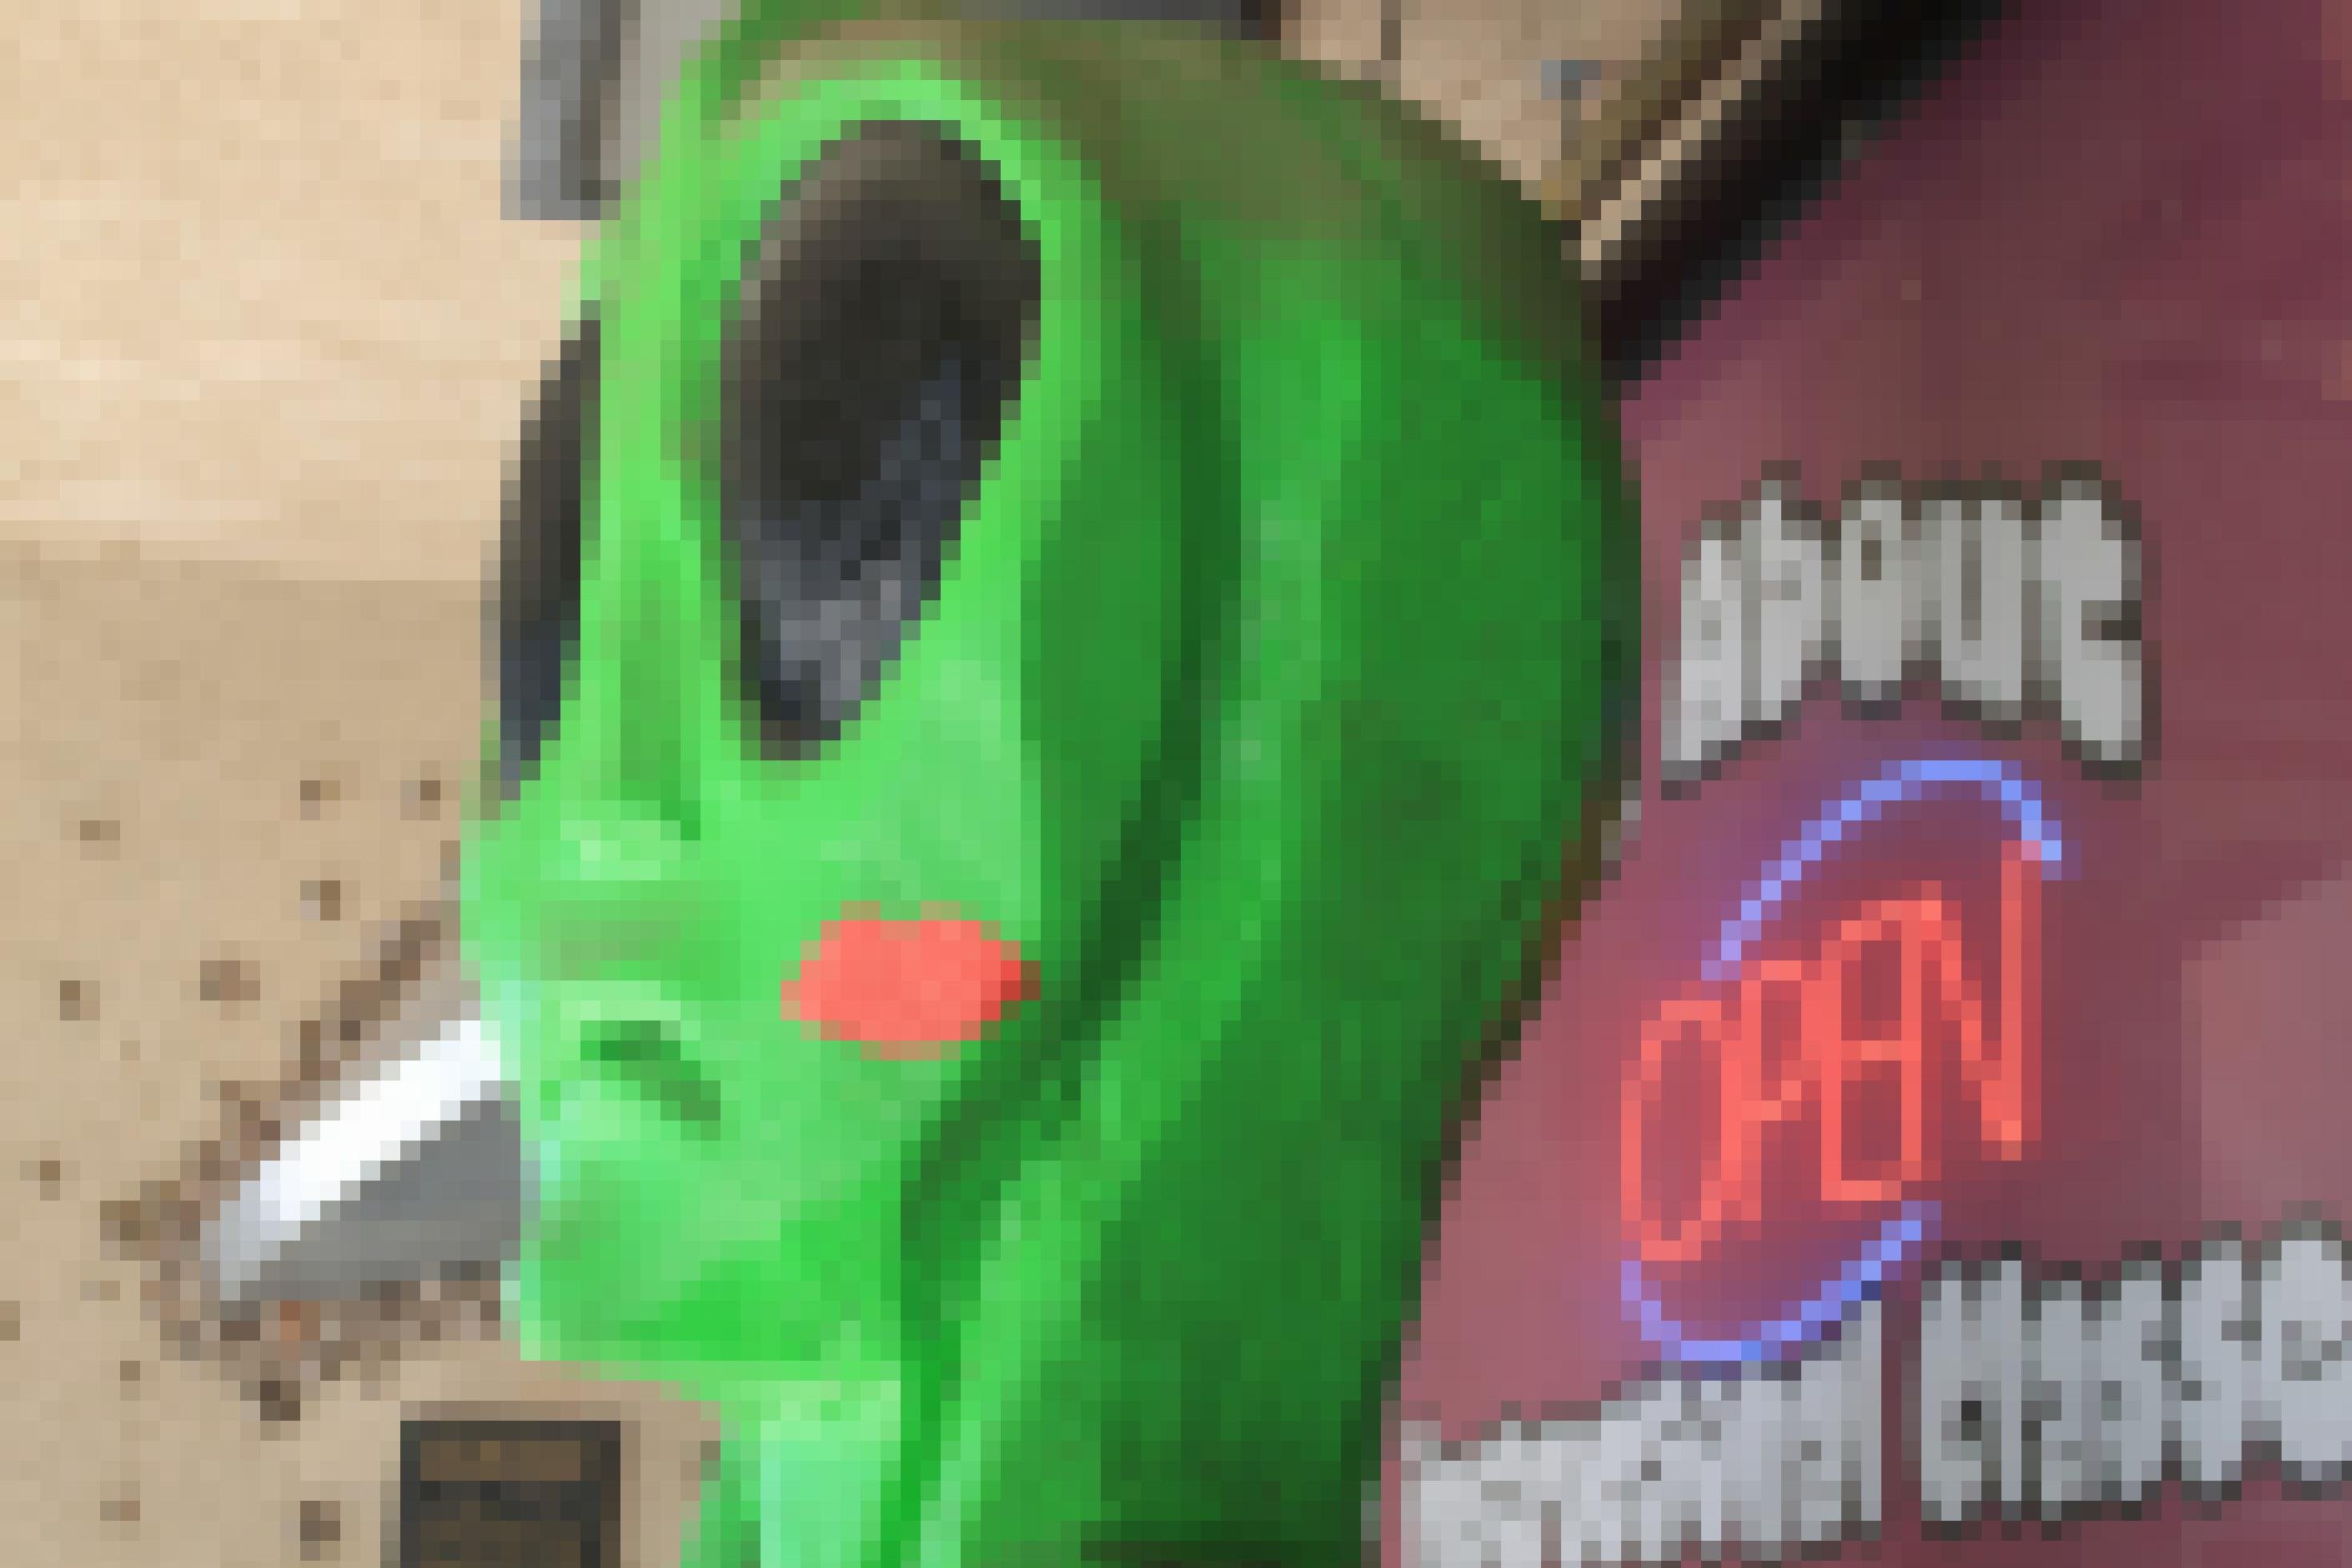 Das Foto zeig einen grünen Alien-Kopf aus Pappmaschee.